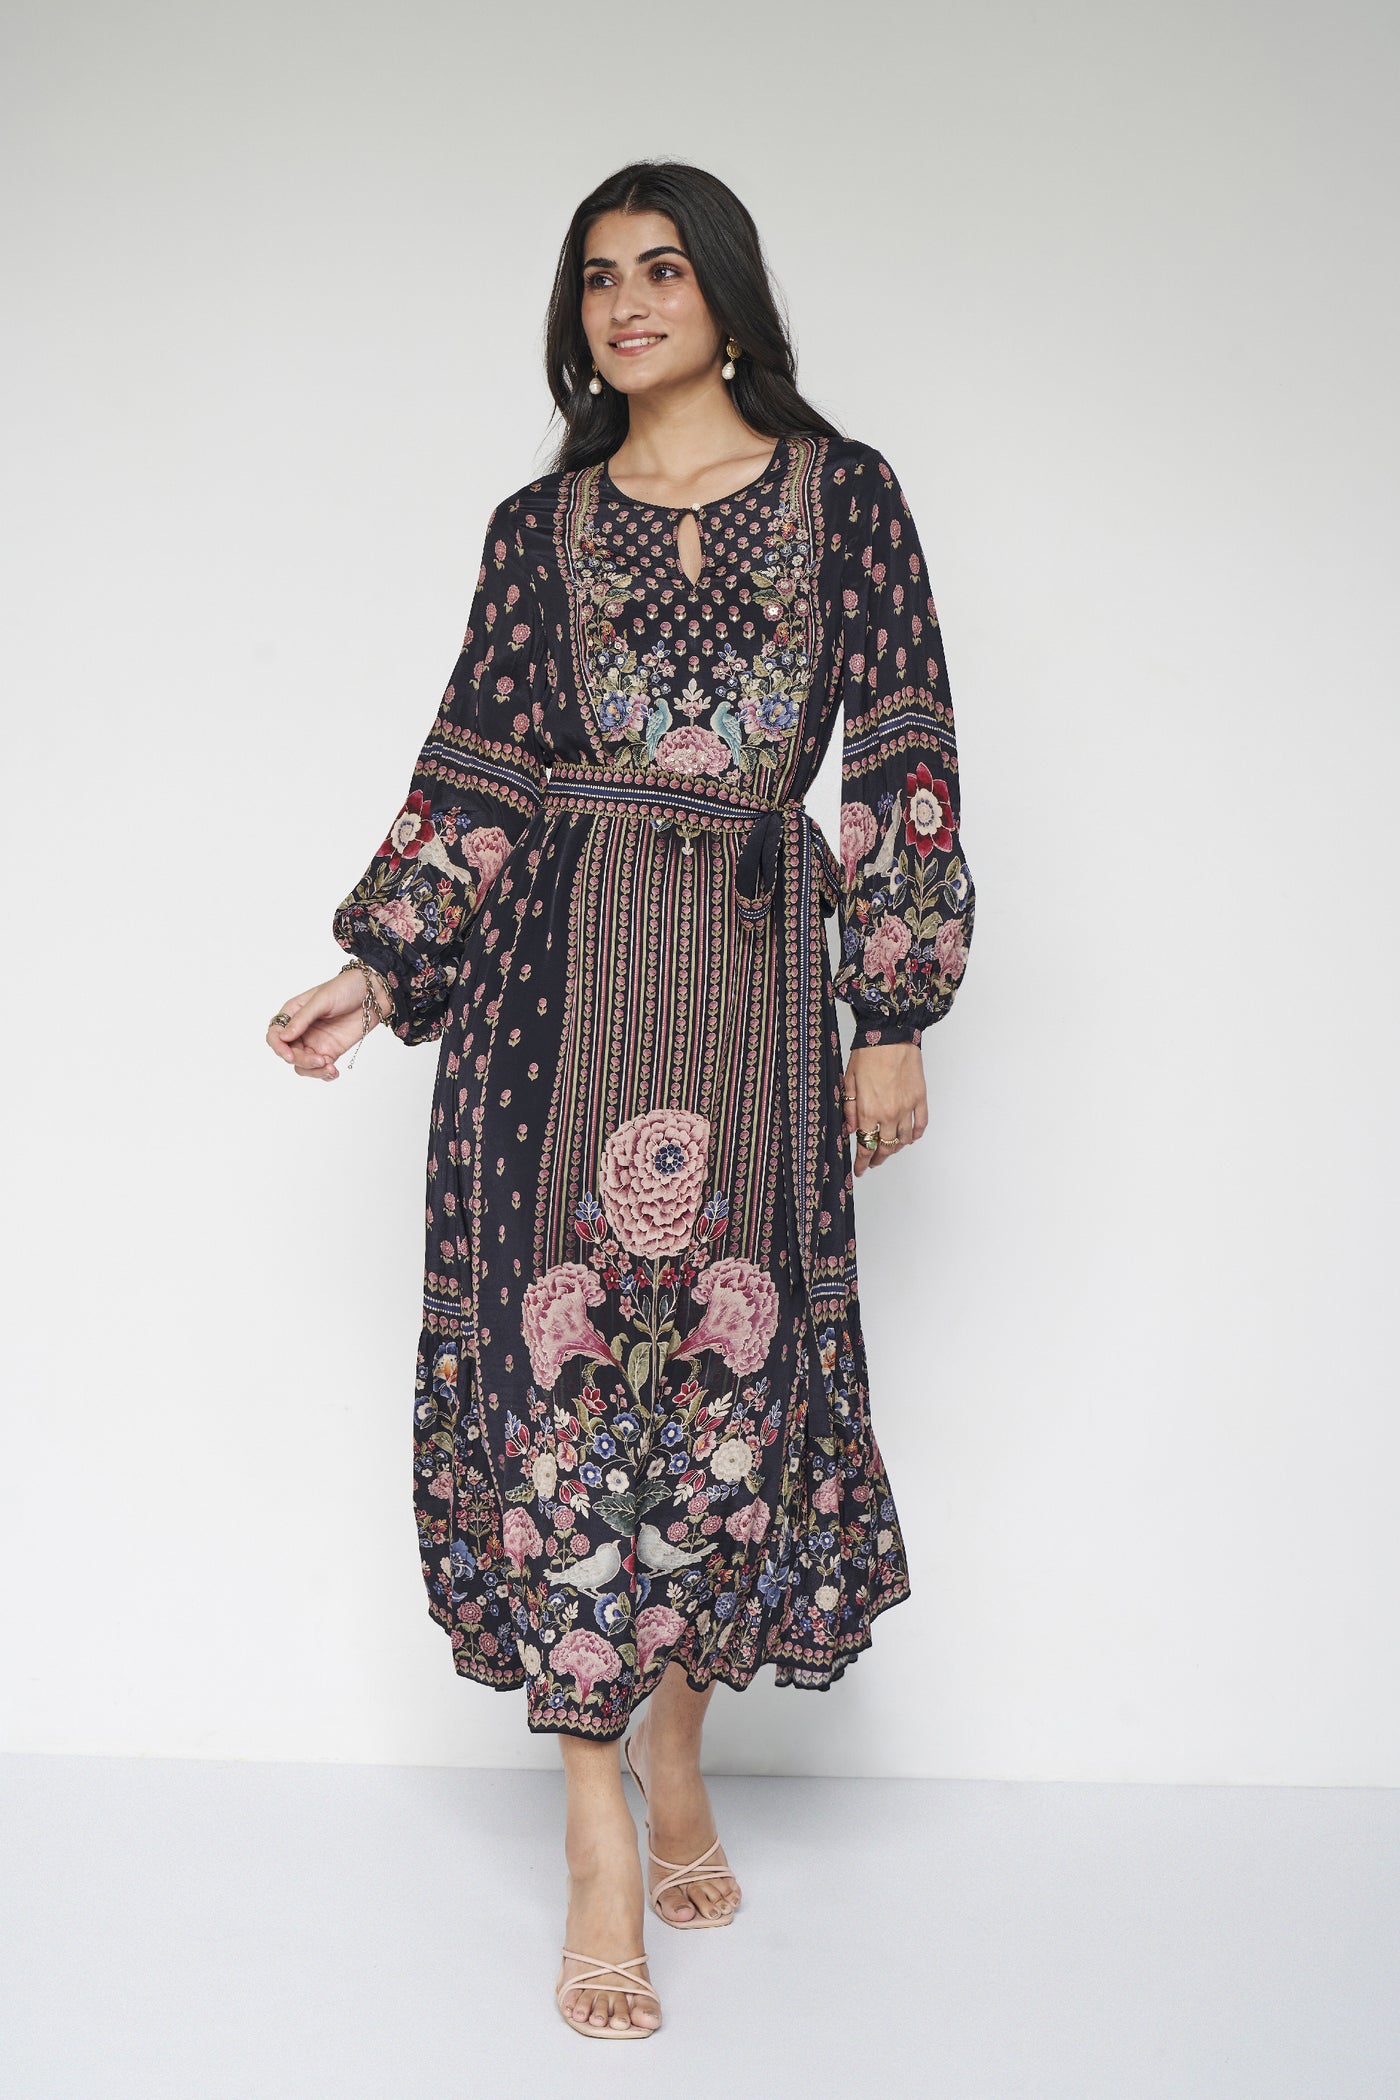 Anita Dongre Isbah Tunic Black indian designer wear online shopping melange singapore